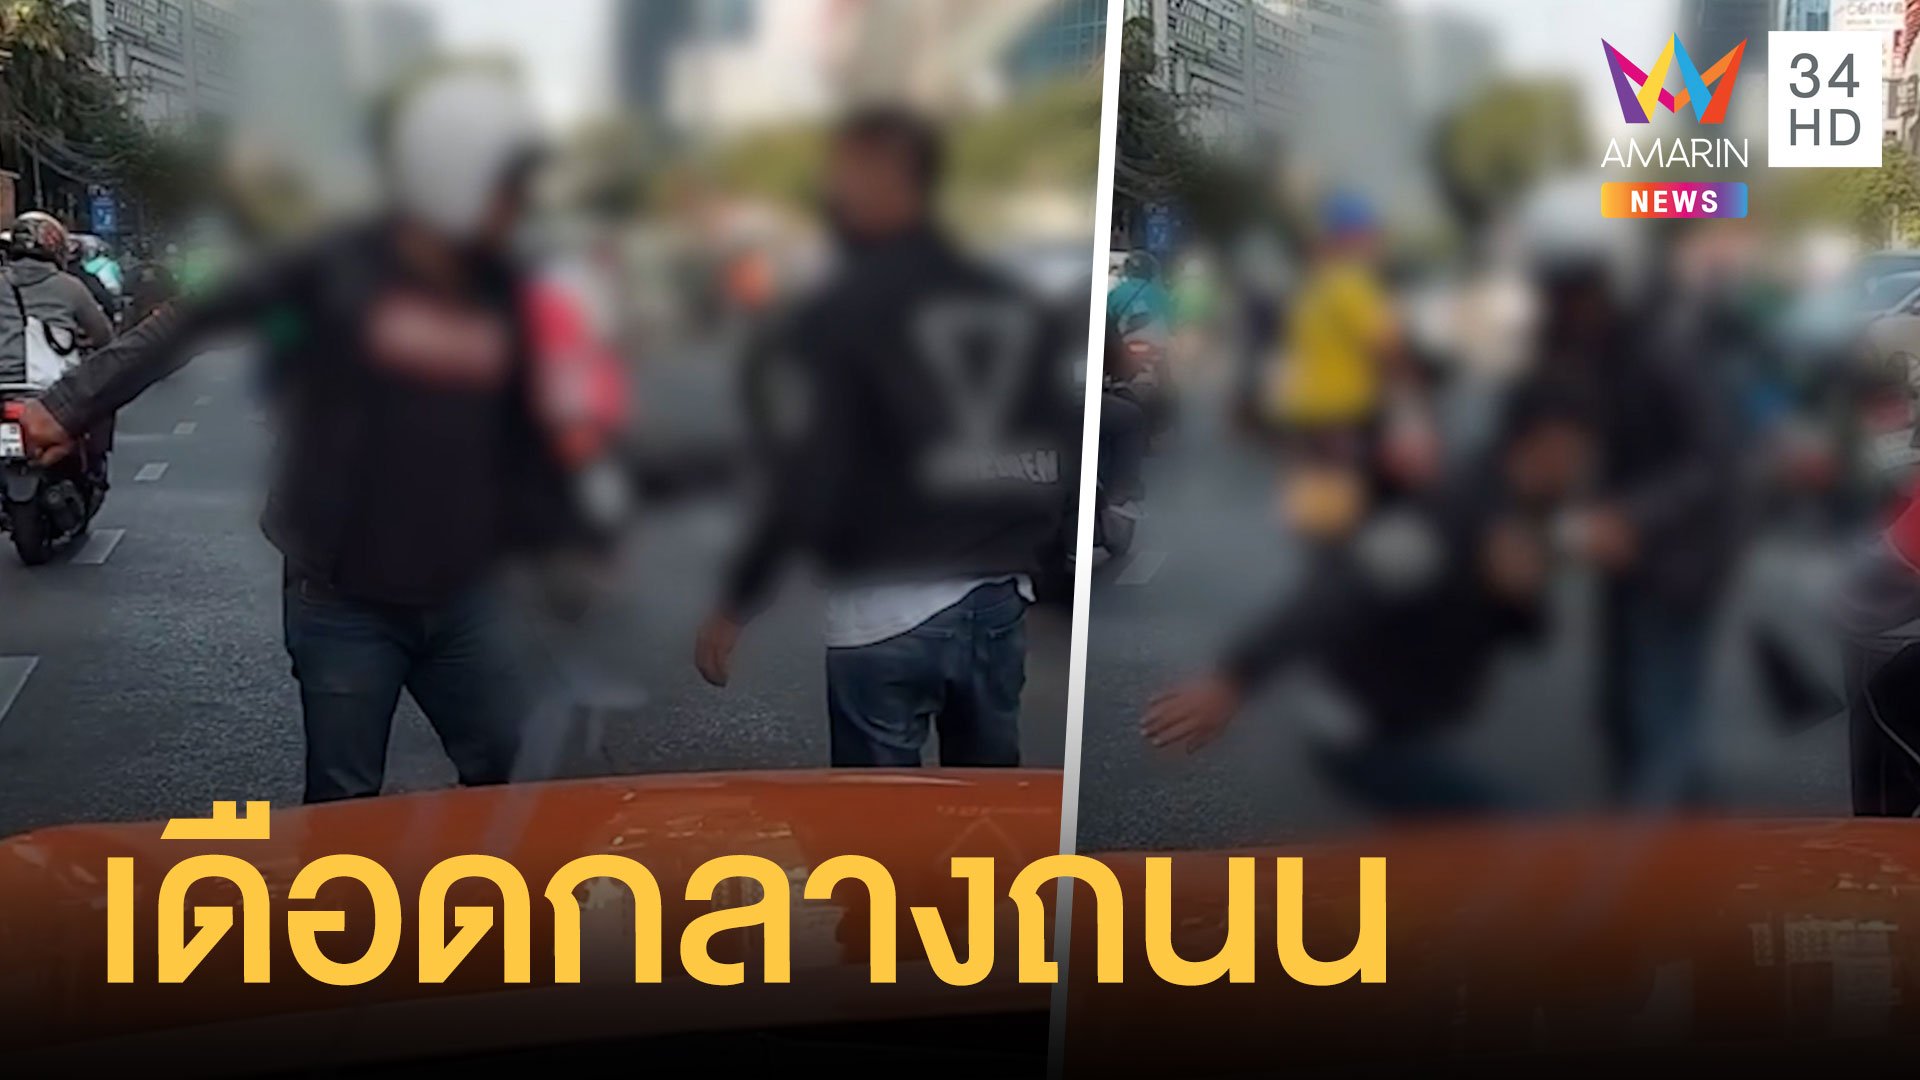 หนุ่มมอเตอร์ไซค์หัวร้อนวางมวยกลางถนน เพราะขี่ปาดหน้า | ข่าวอรุณอมรินทร์ | 13 ม.ค. 64 | AMARIN TVHD34